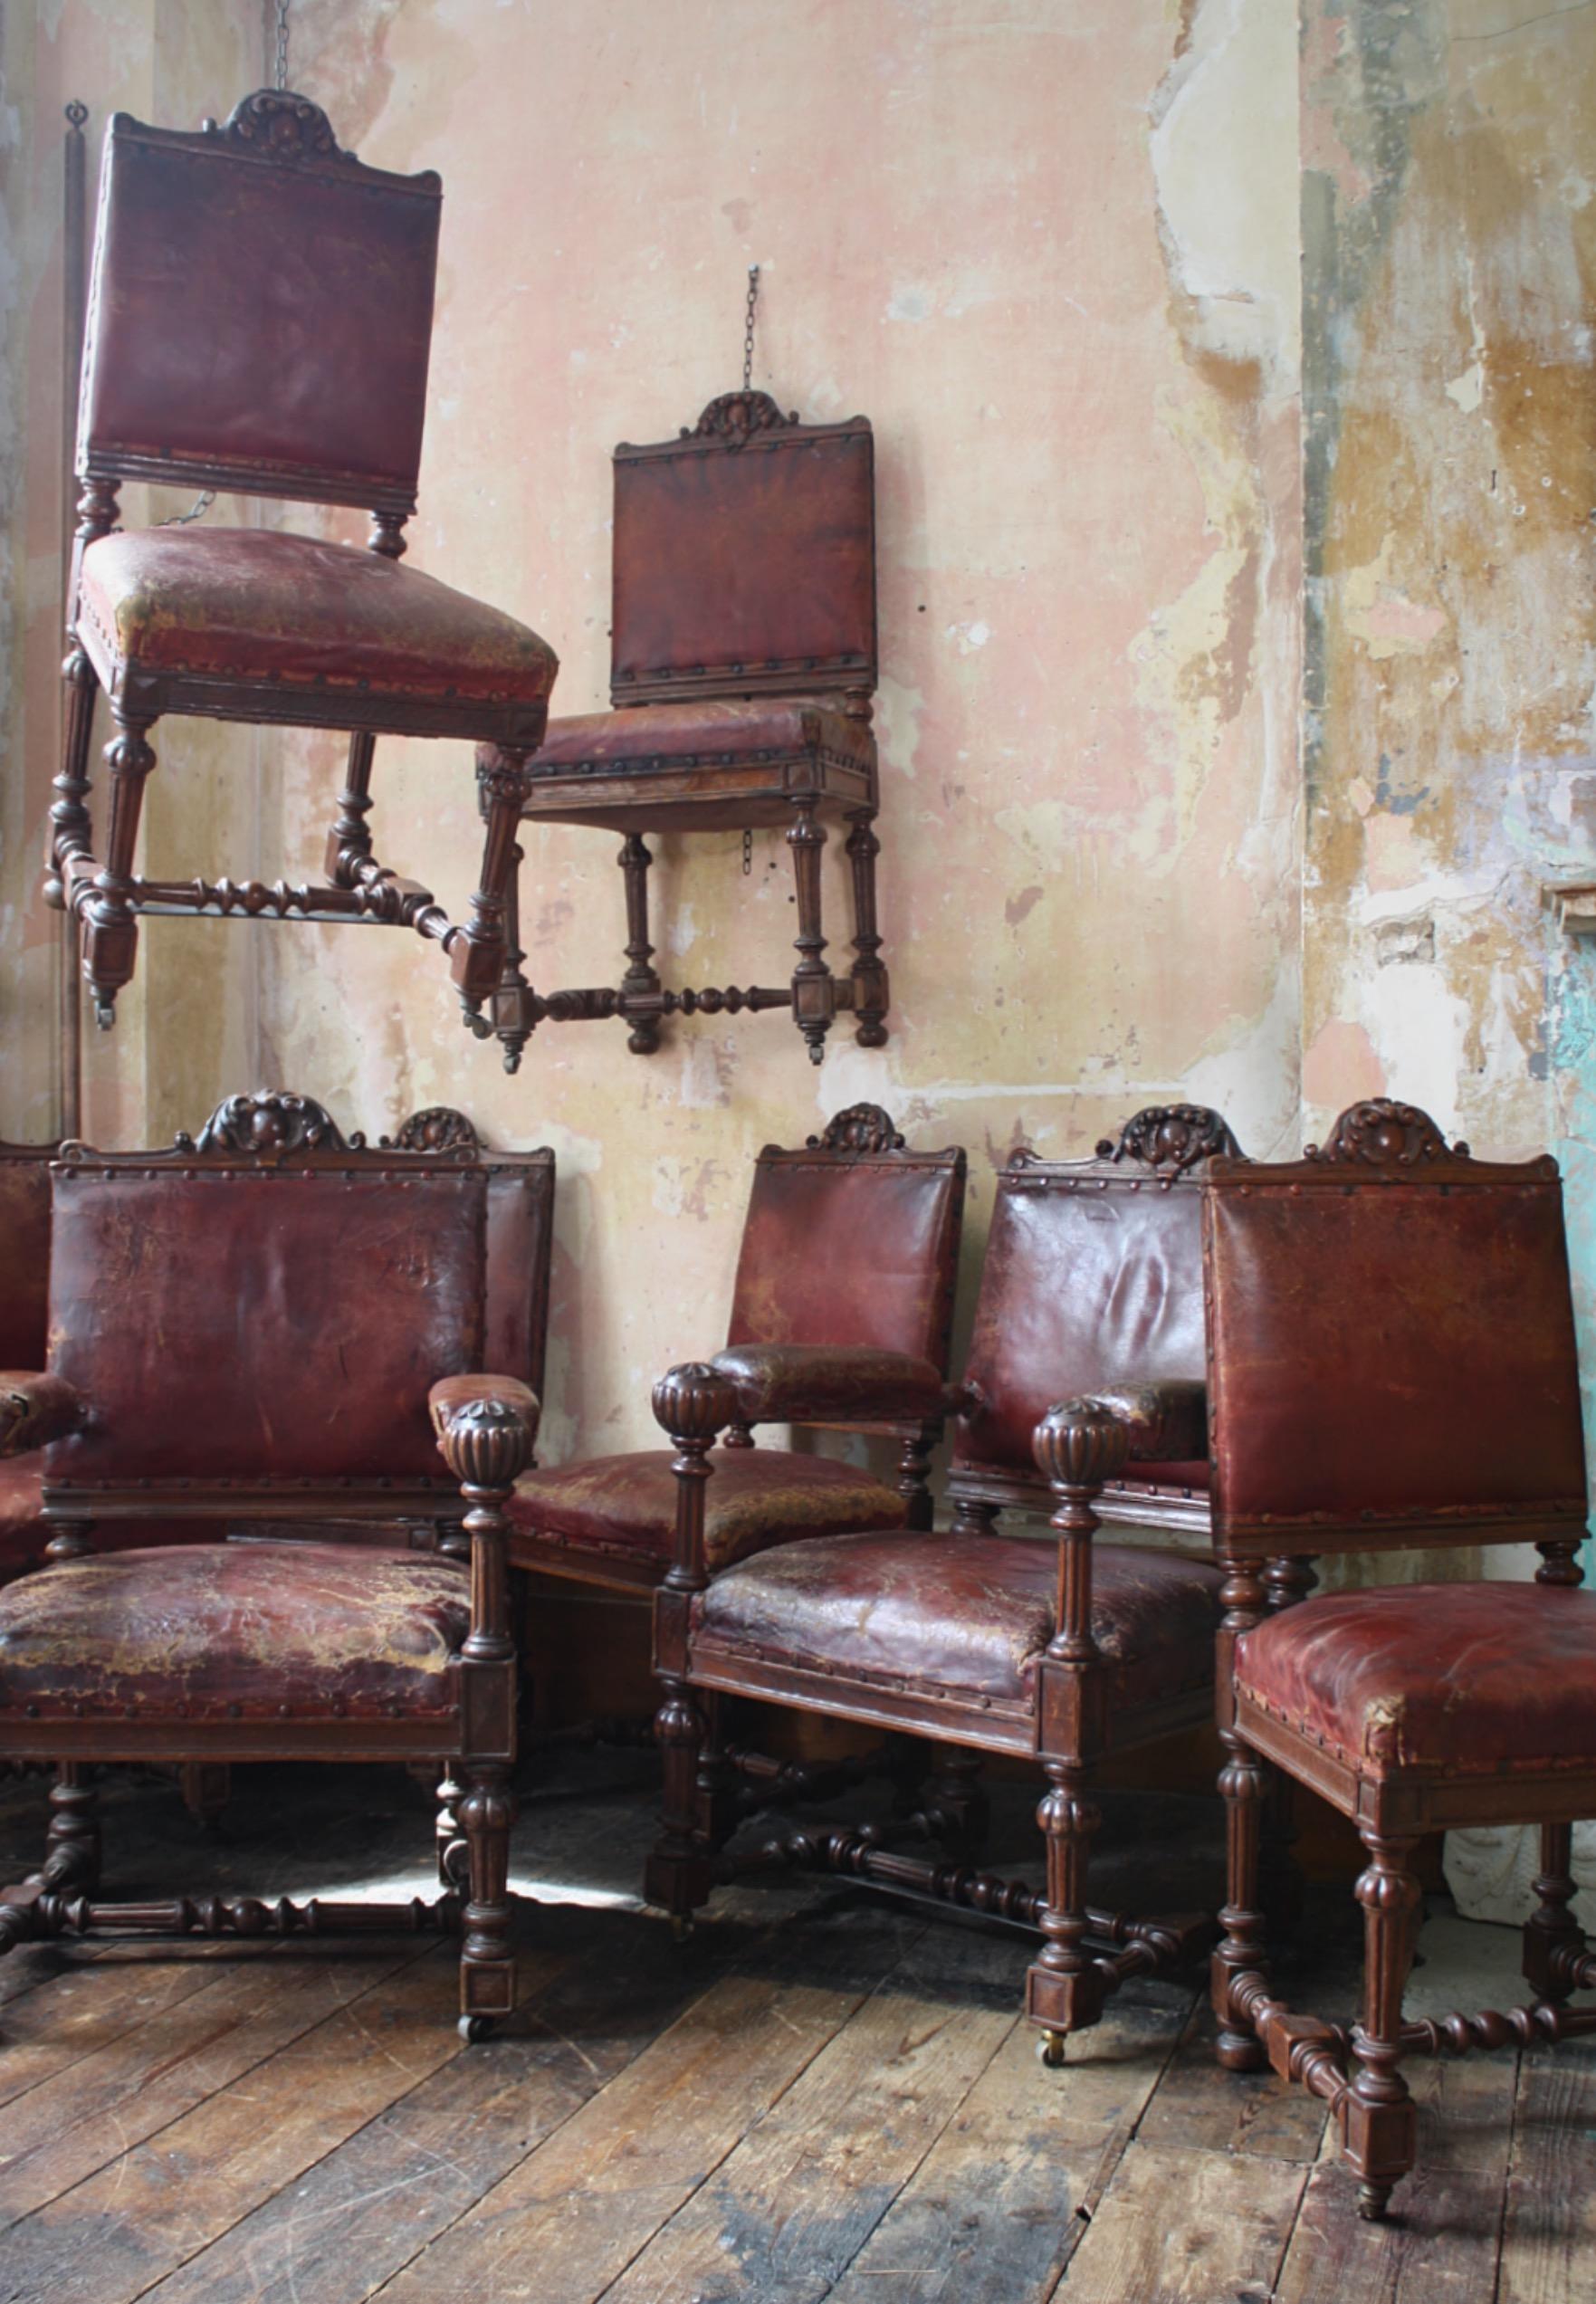 Eine gute robuste Reihe von acht Eiche und rotem Leder gepolstert Esszimmerstühle, die vor kurzem aus einem schottischen Anwesen erworben. Die Eiche ist gut geschnitzt und hat eine tolle Farbe.

Das Leder ist von besonders guter Qualität, weshalb es